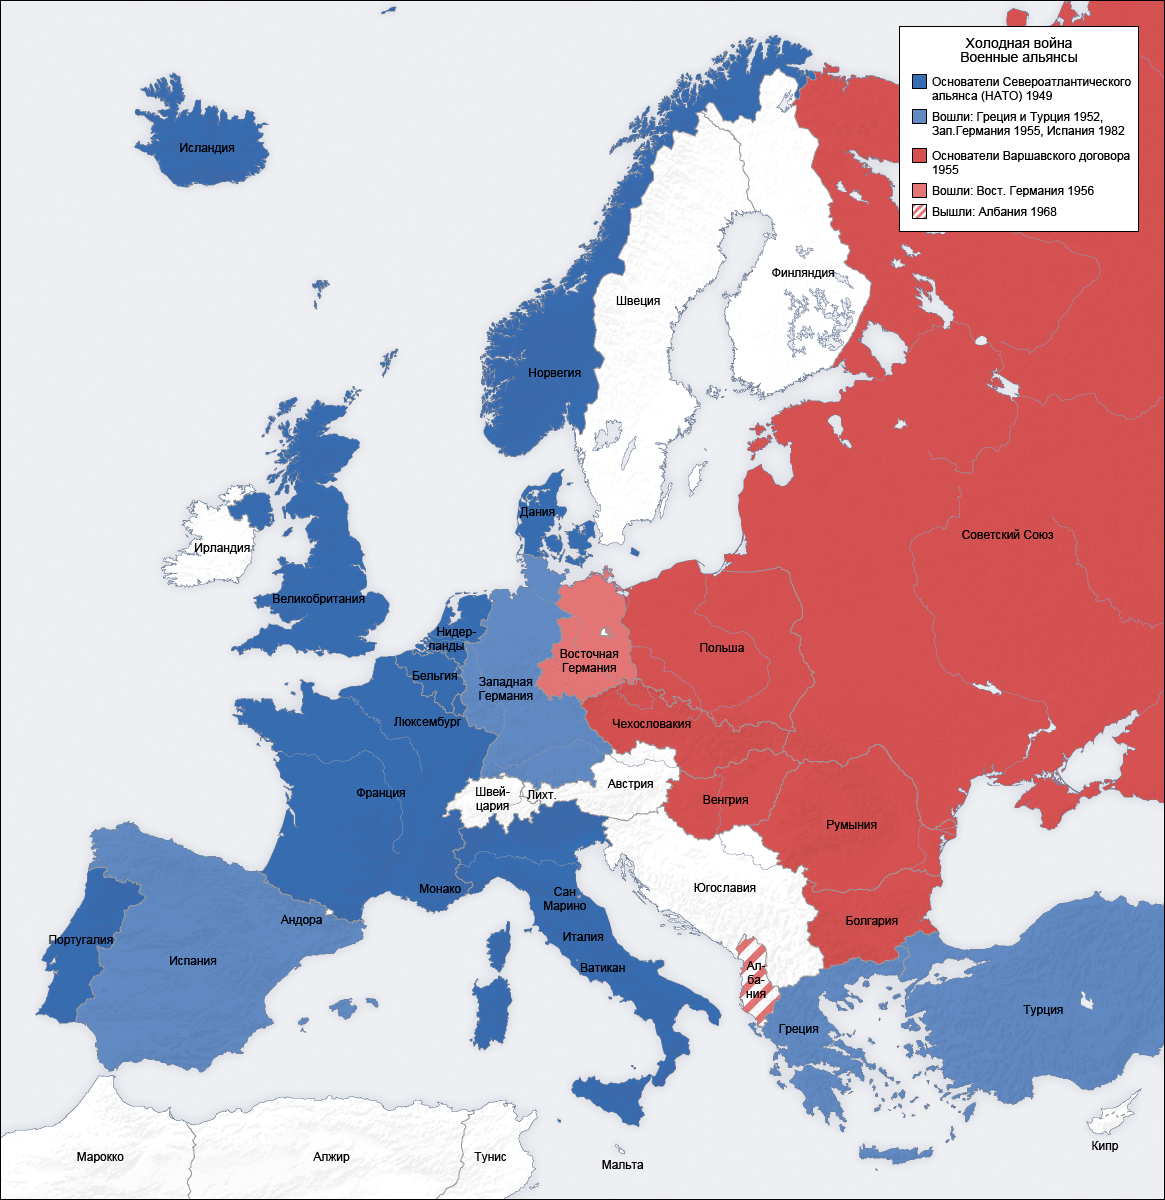 Карта разделения Европы во время Холодной войны — НАТО и ОВД (Организация Североатлантического договора и Организация Варшавского договора)